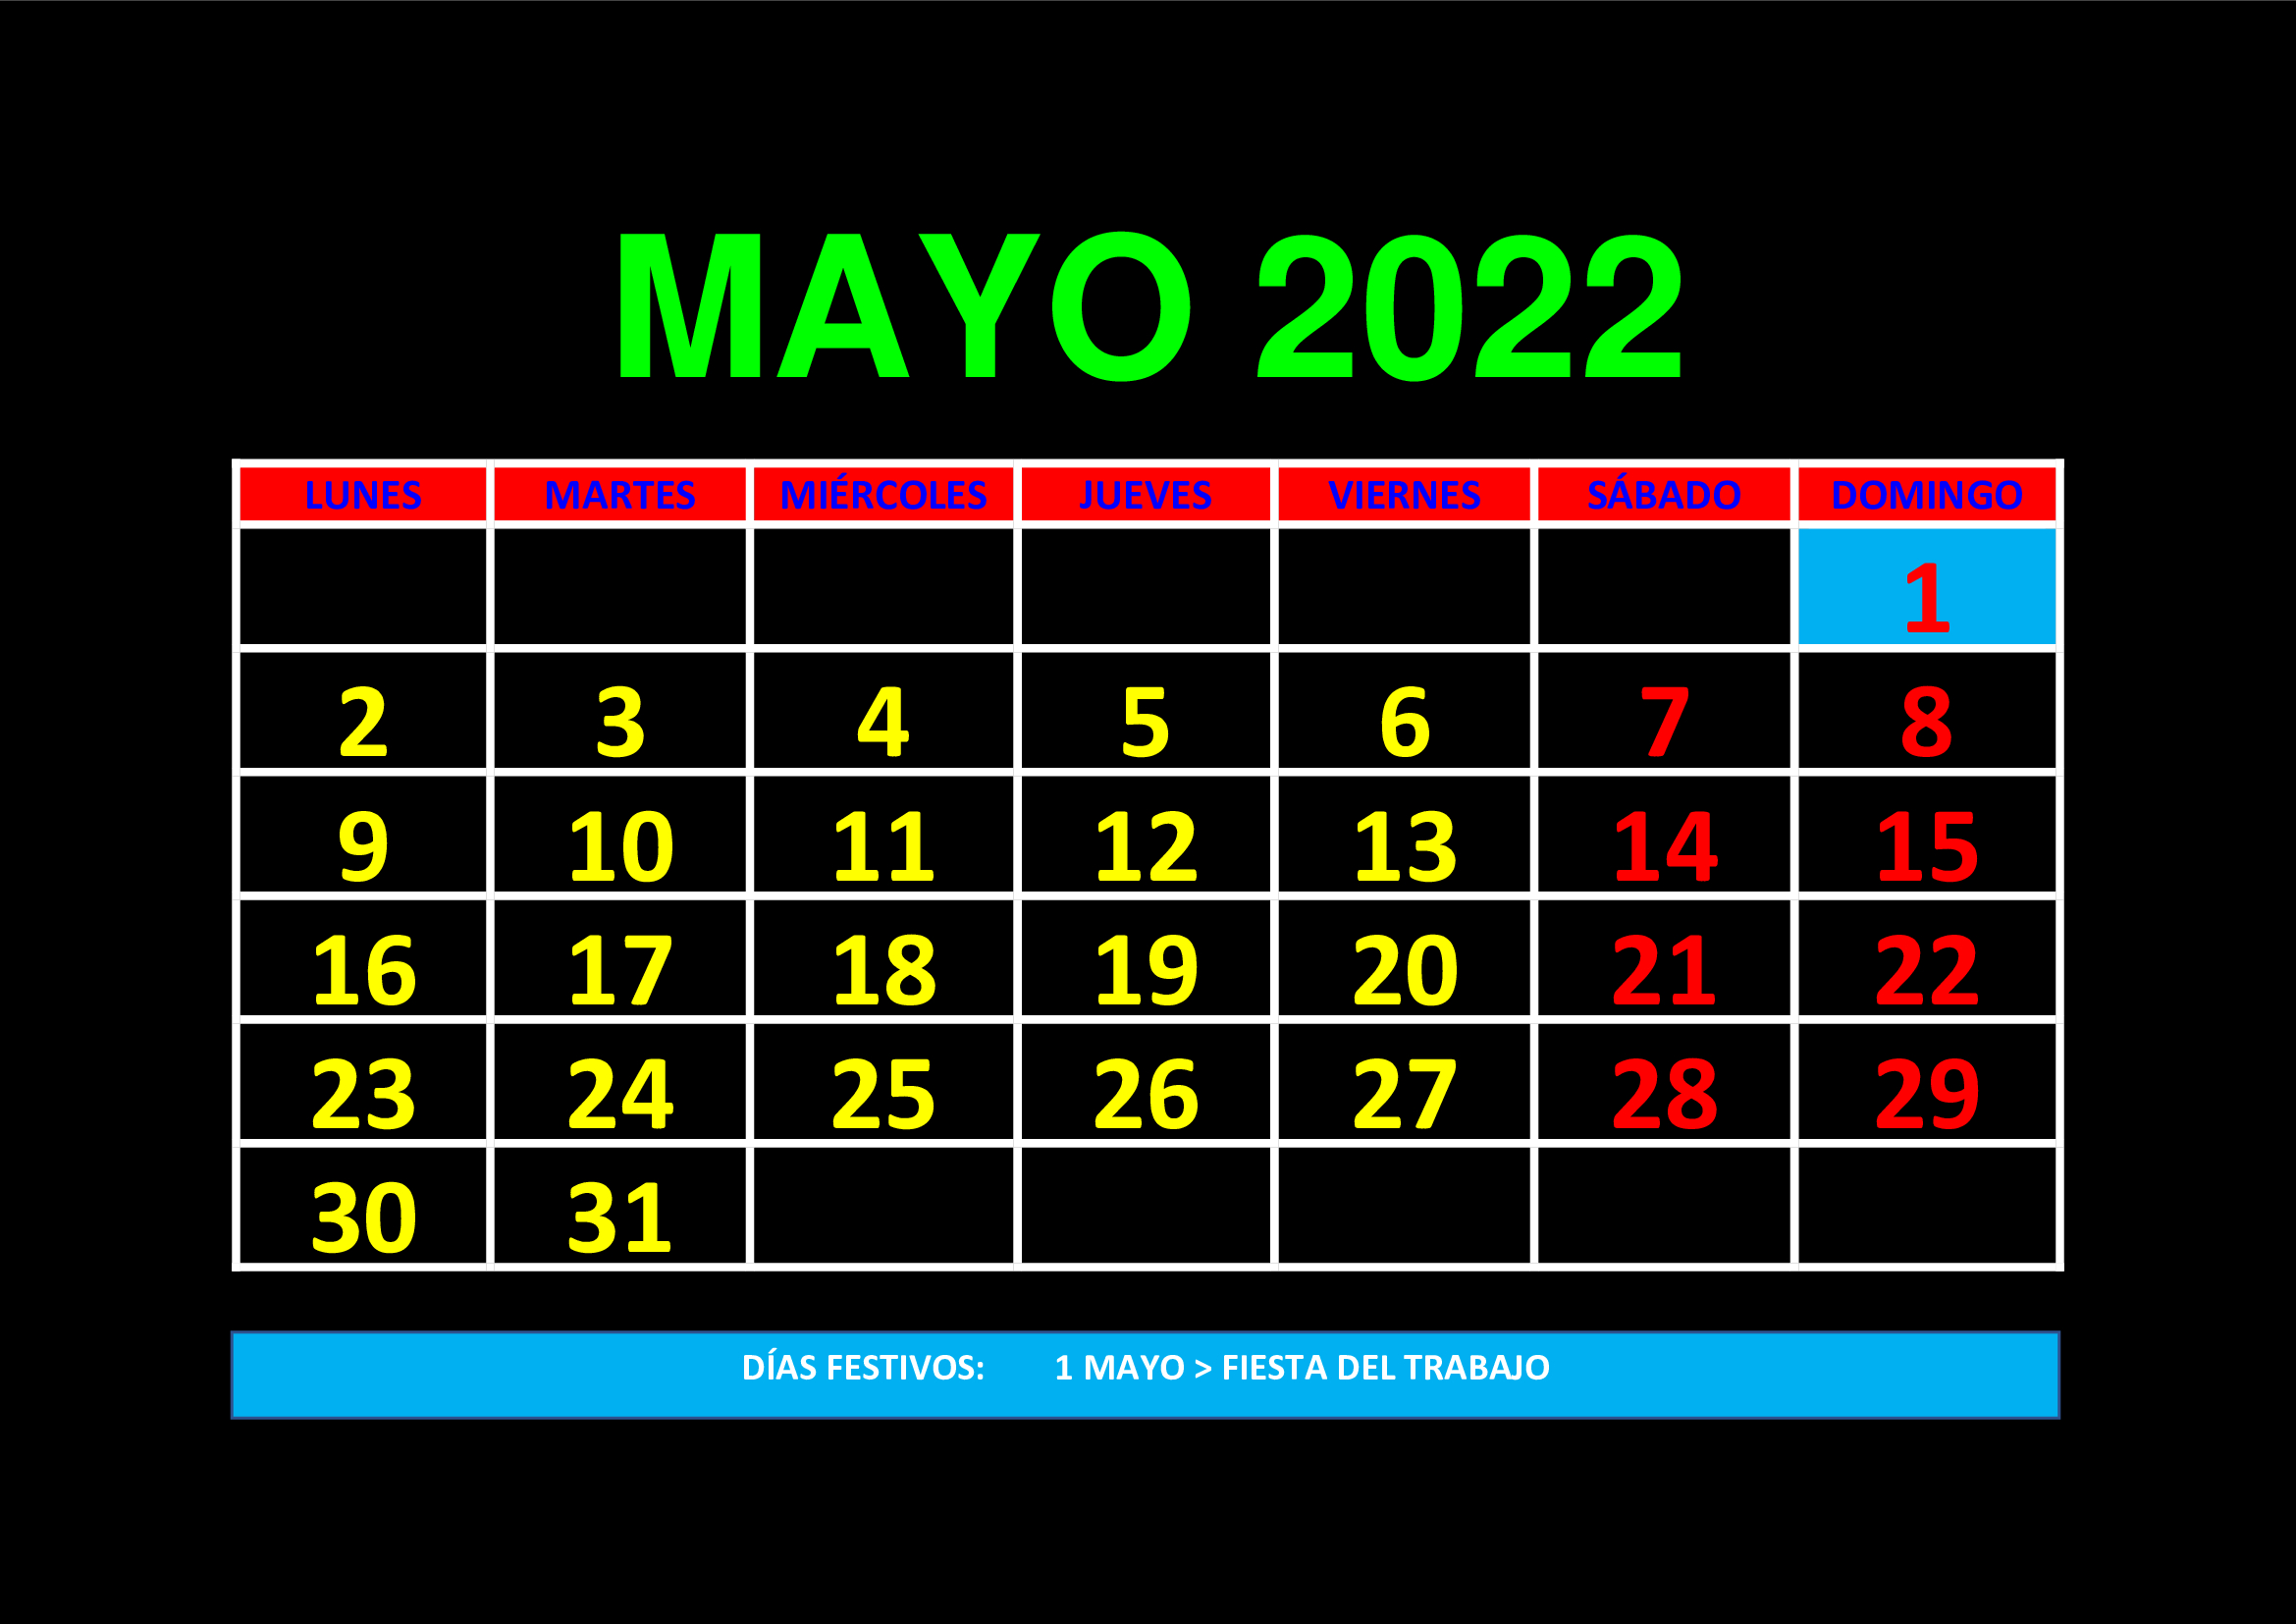 La imagen muestra el mes de mayo de 2022